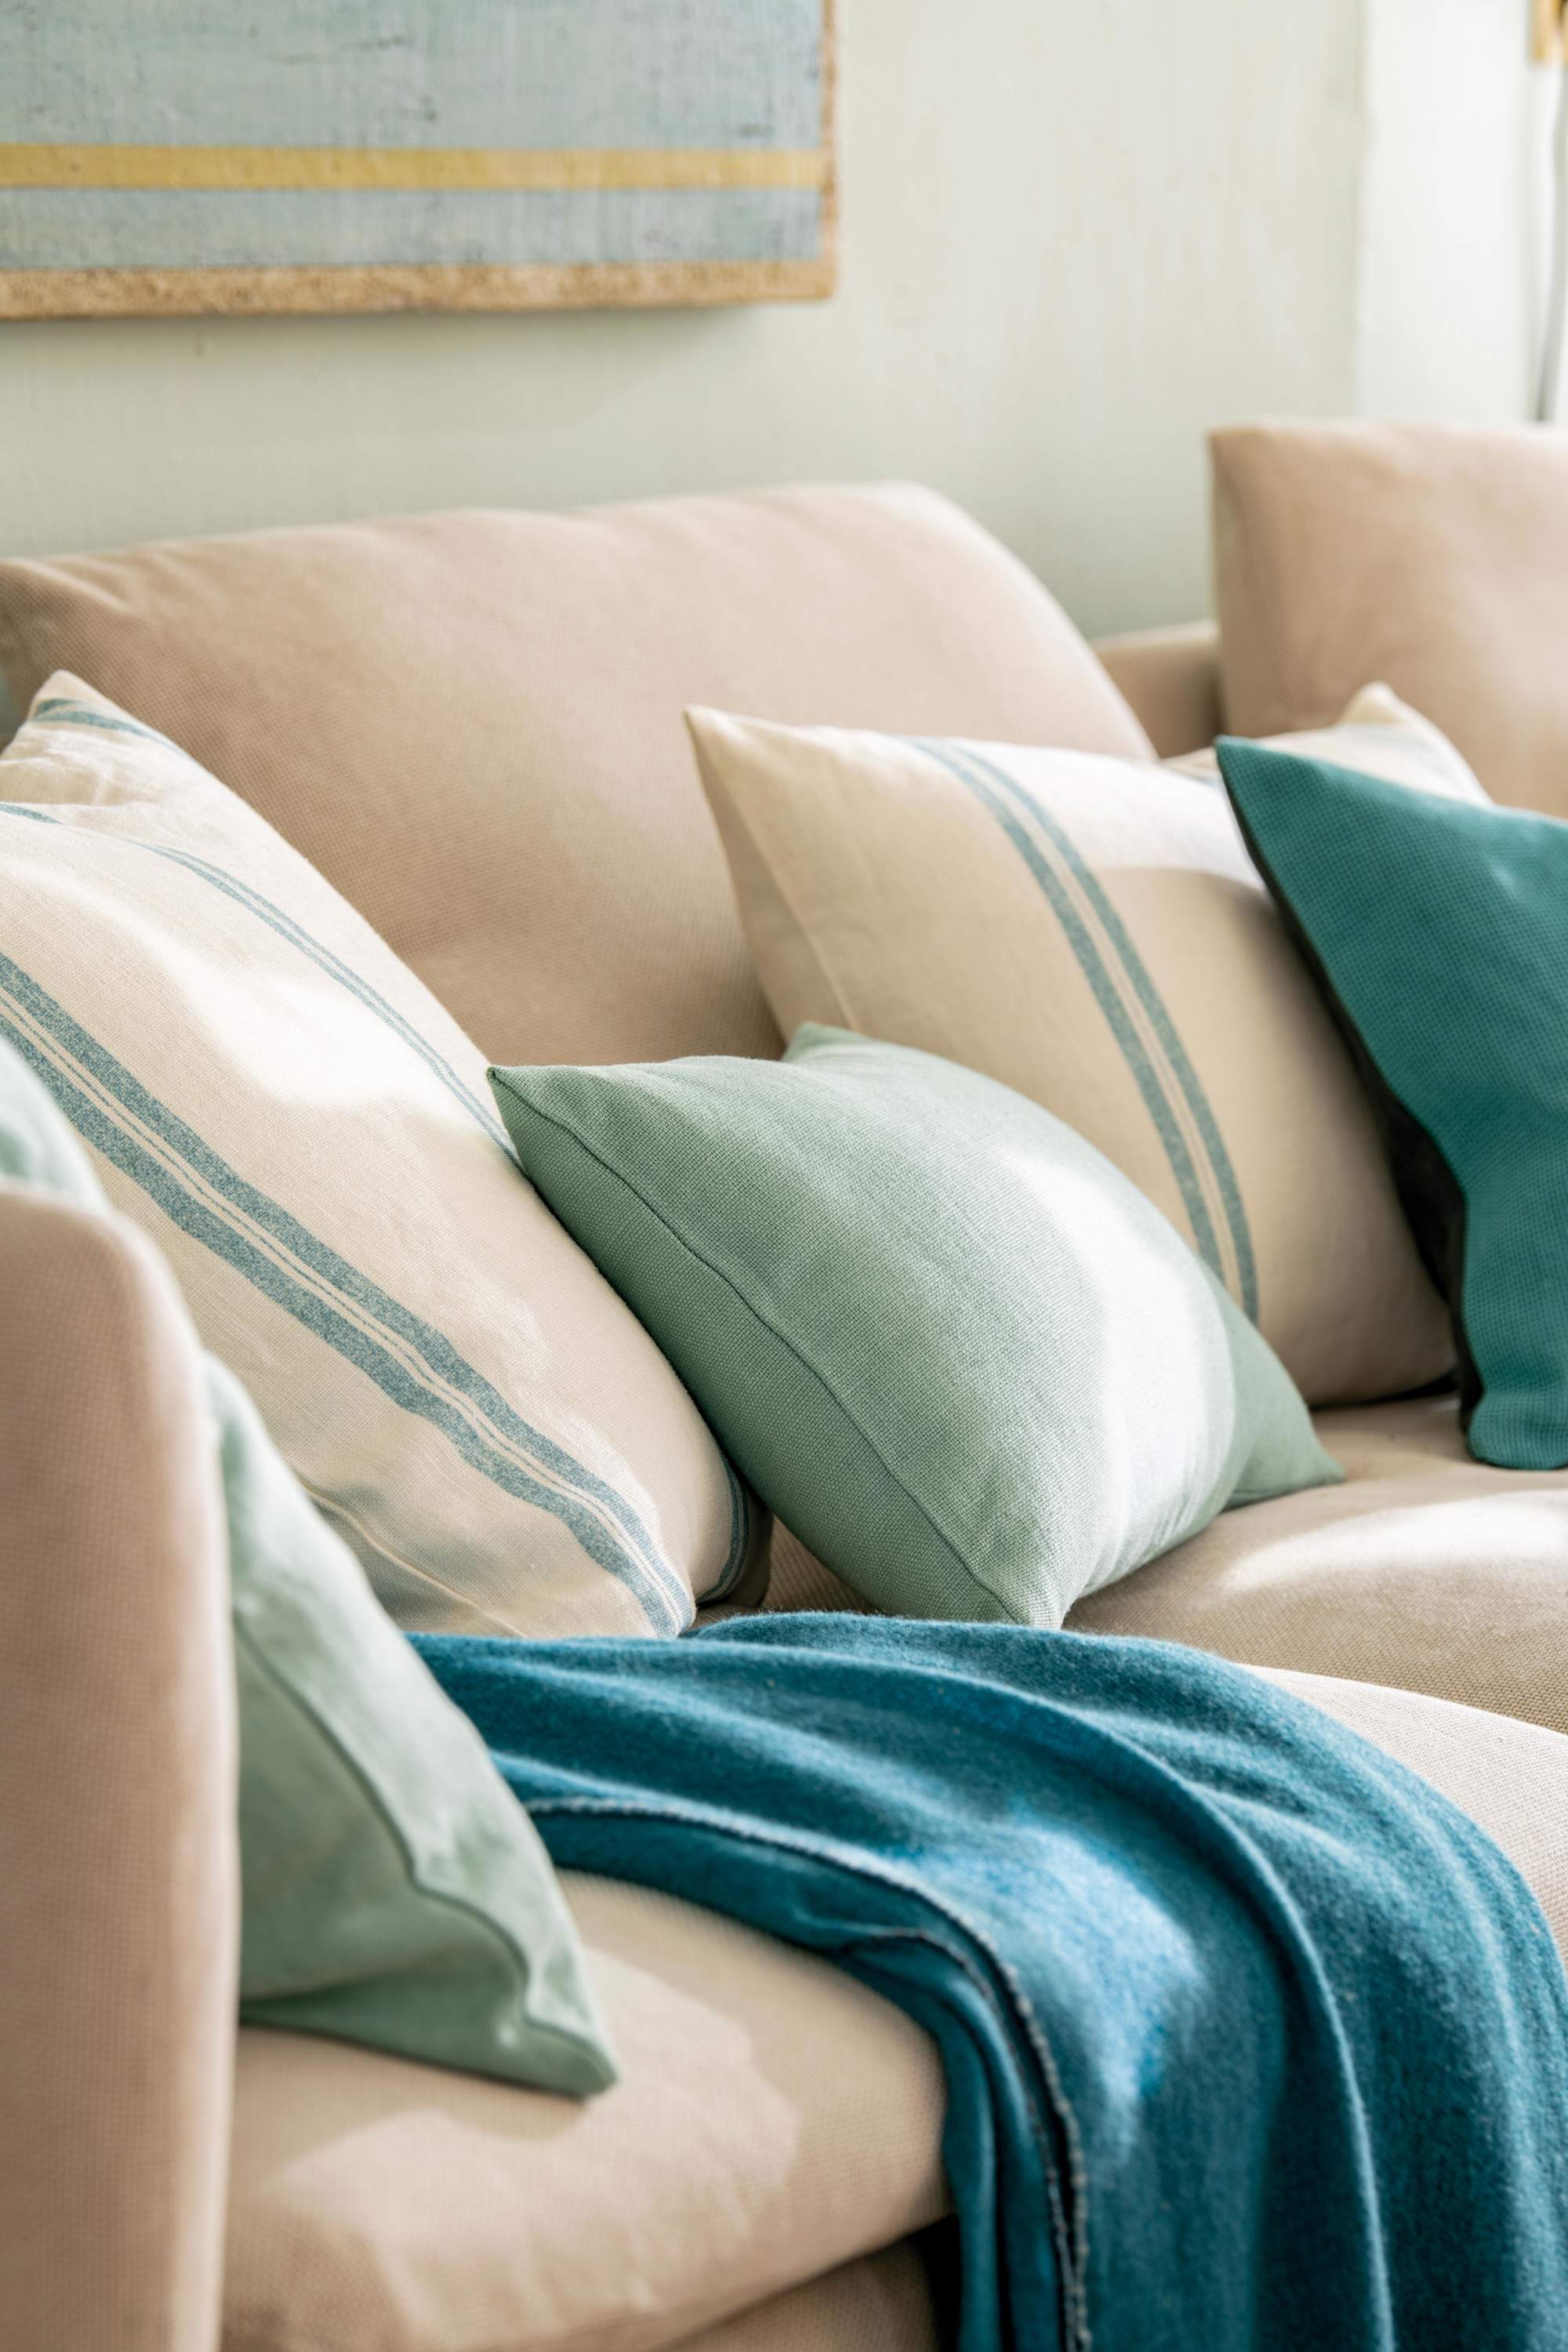 Textiles azules y verdes en sofá.